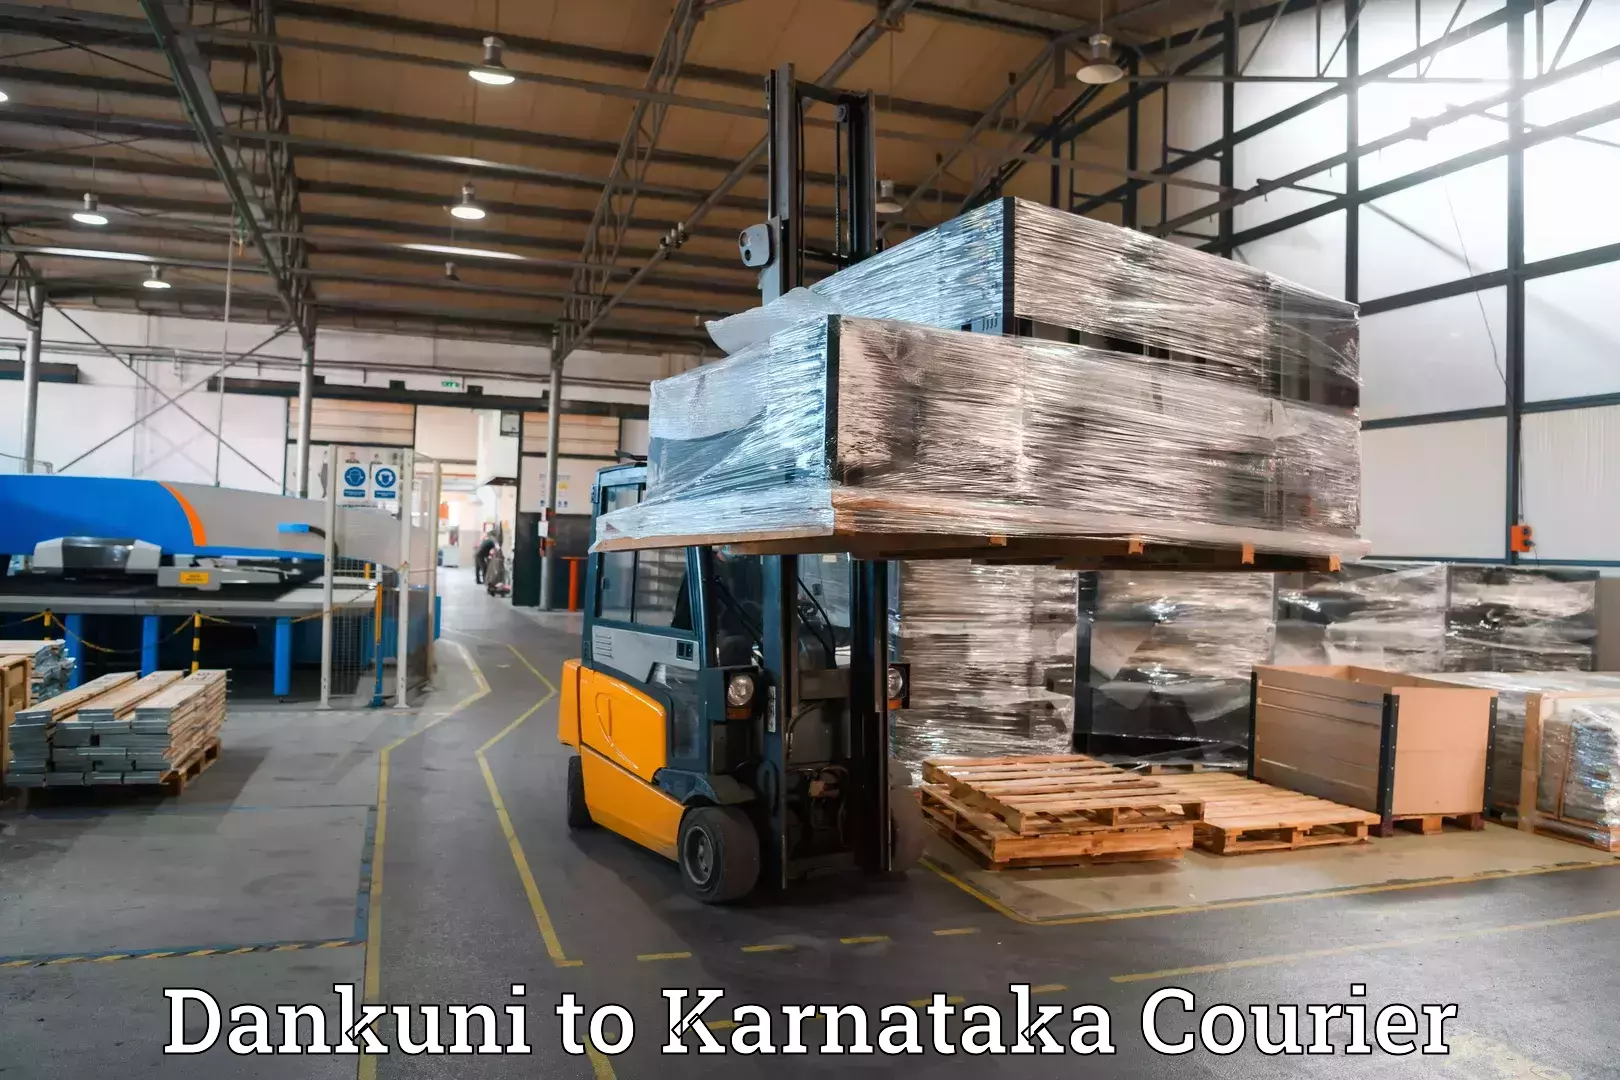 Urgent luggage shipment Dankuni to Karnataka